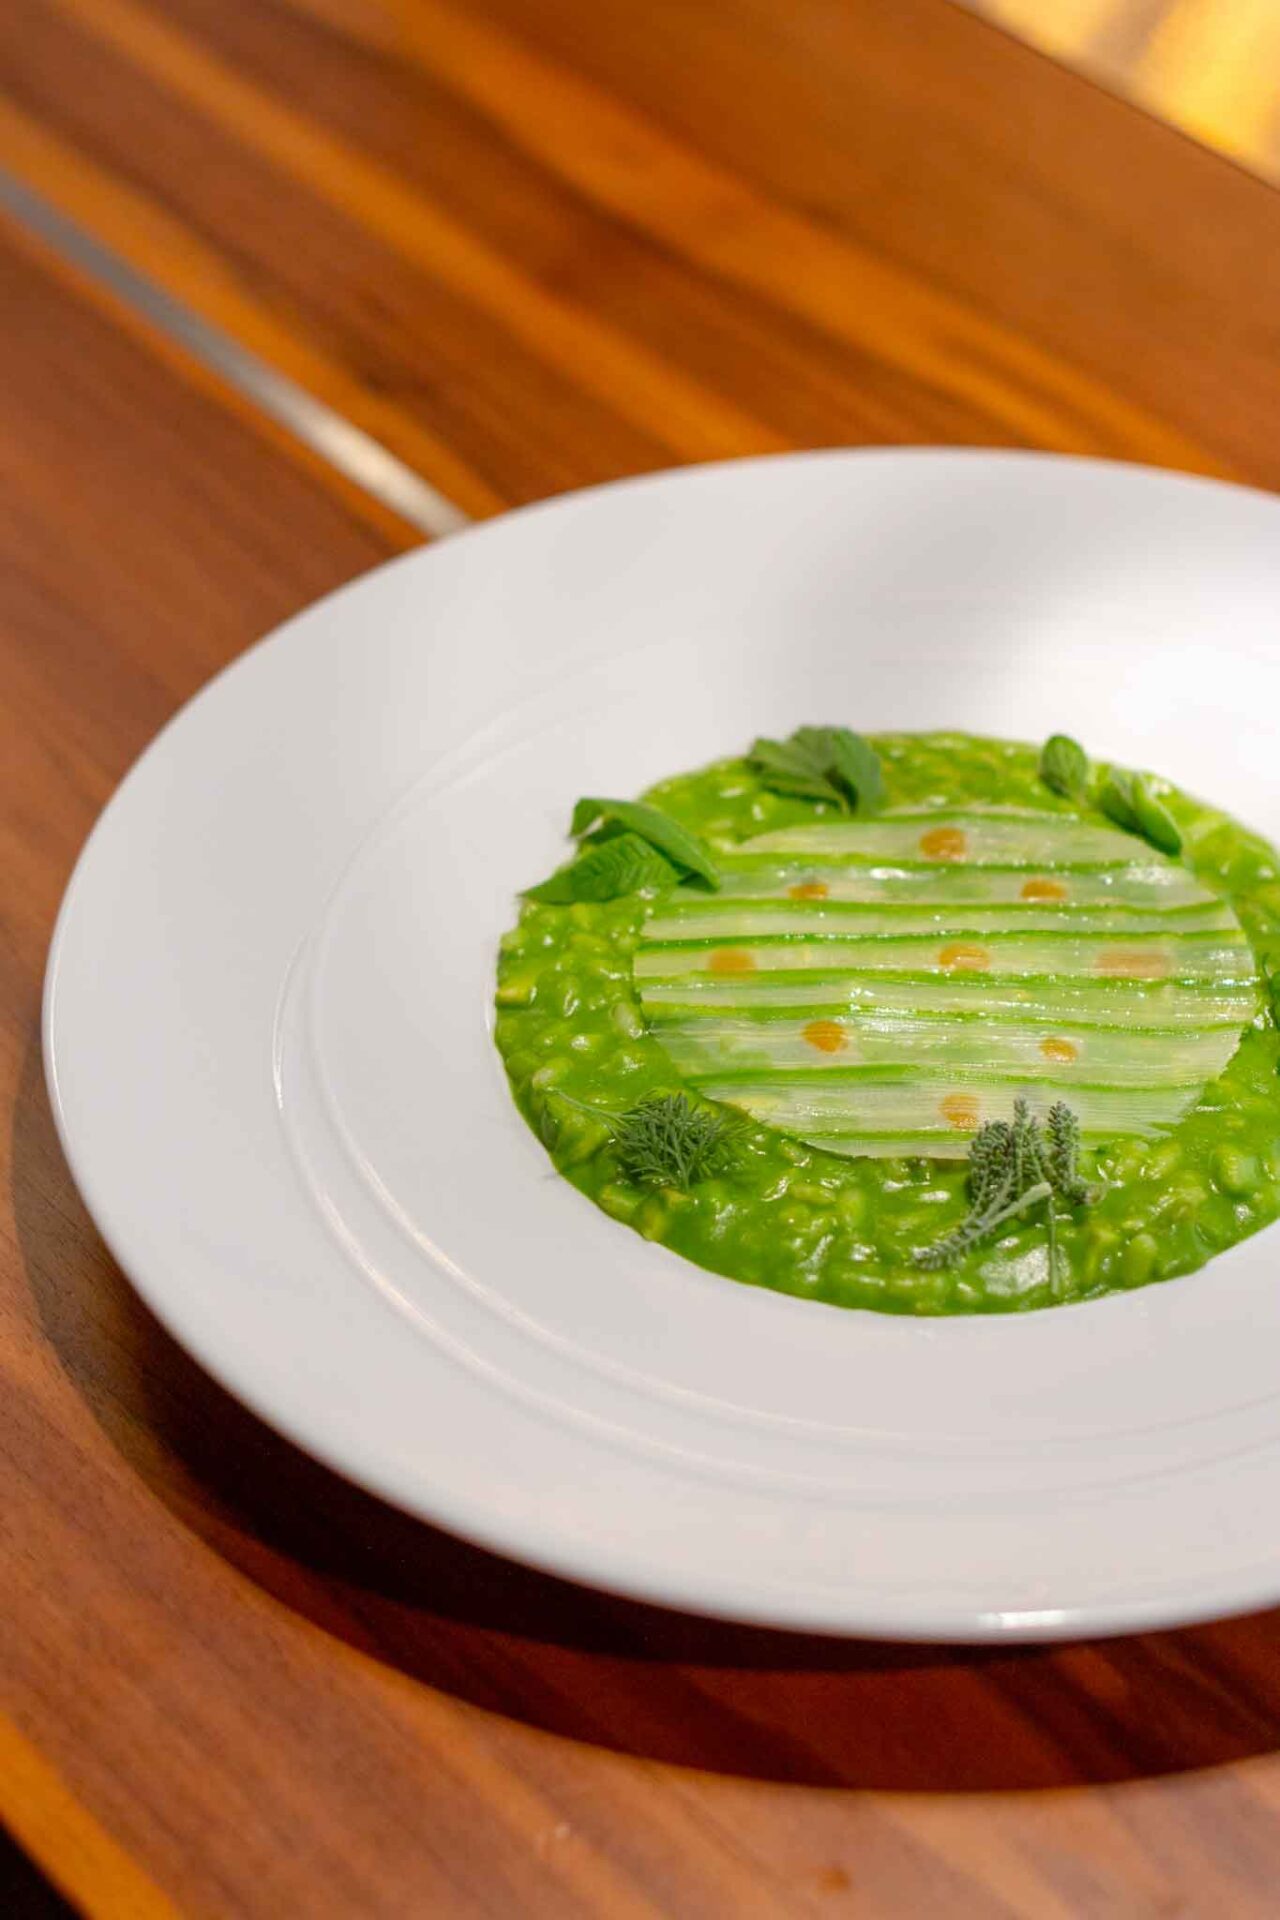 recensione del menu di primavera del ristorante Scatto a Torino: risotto carnaroli in verde